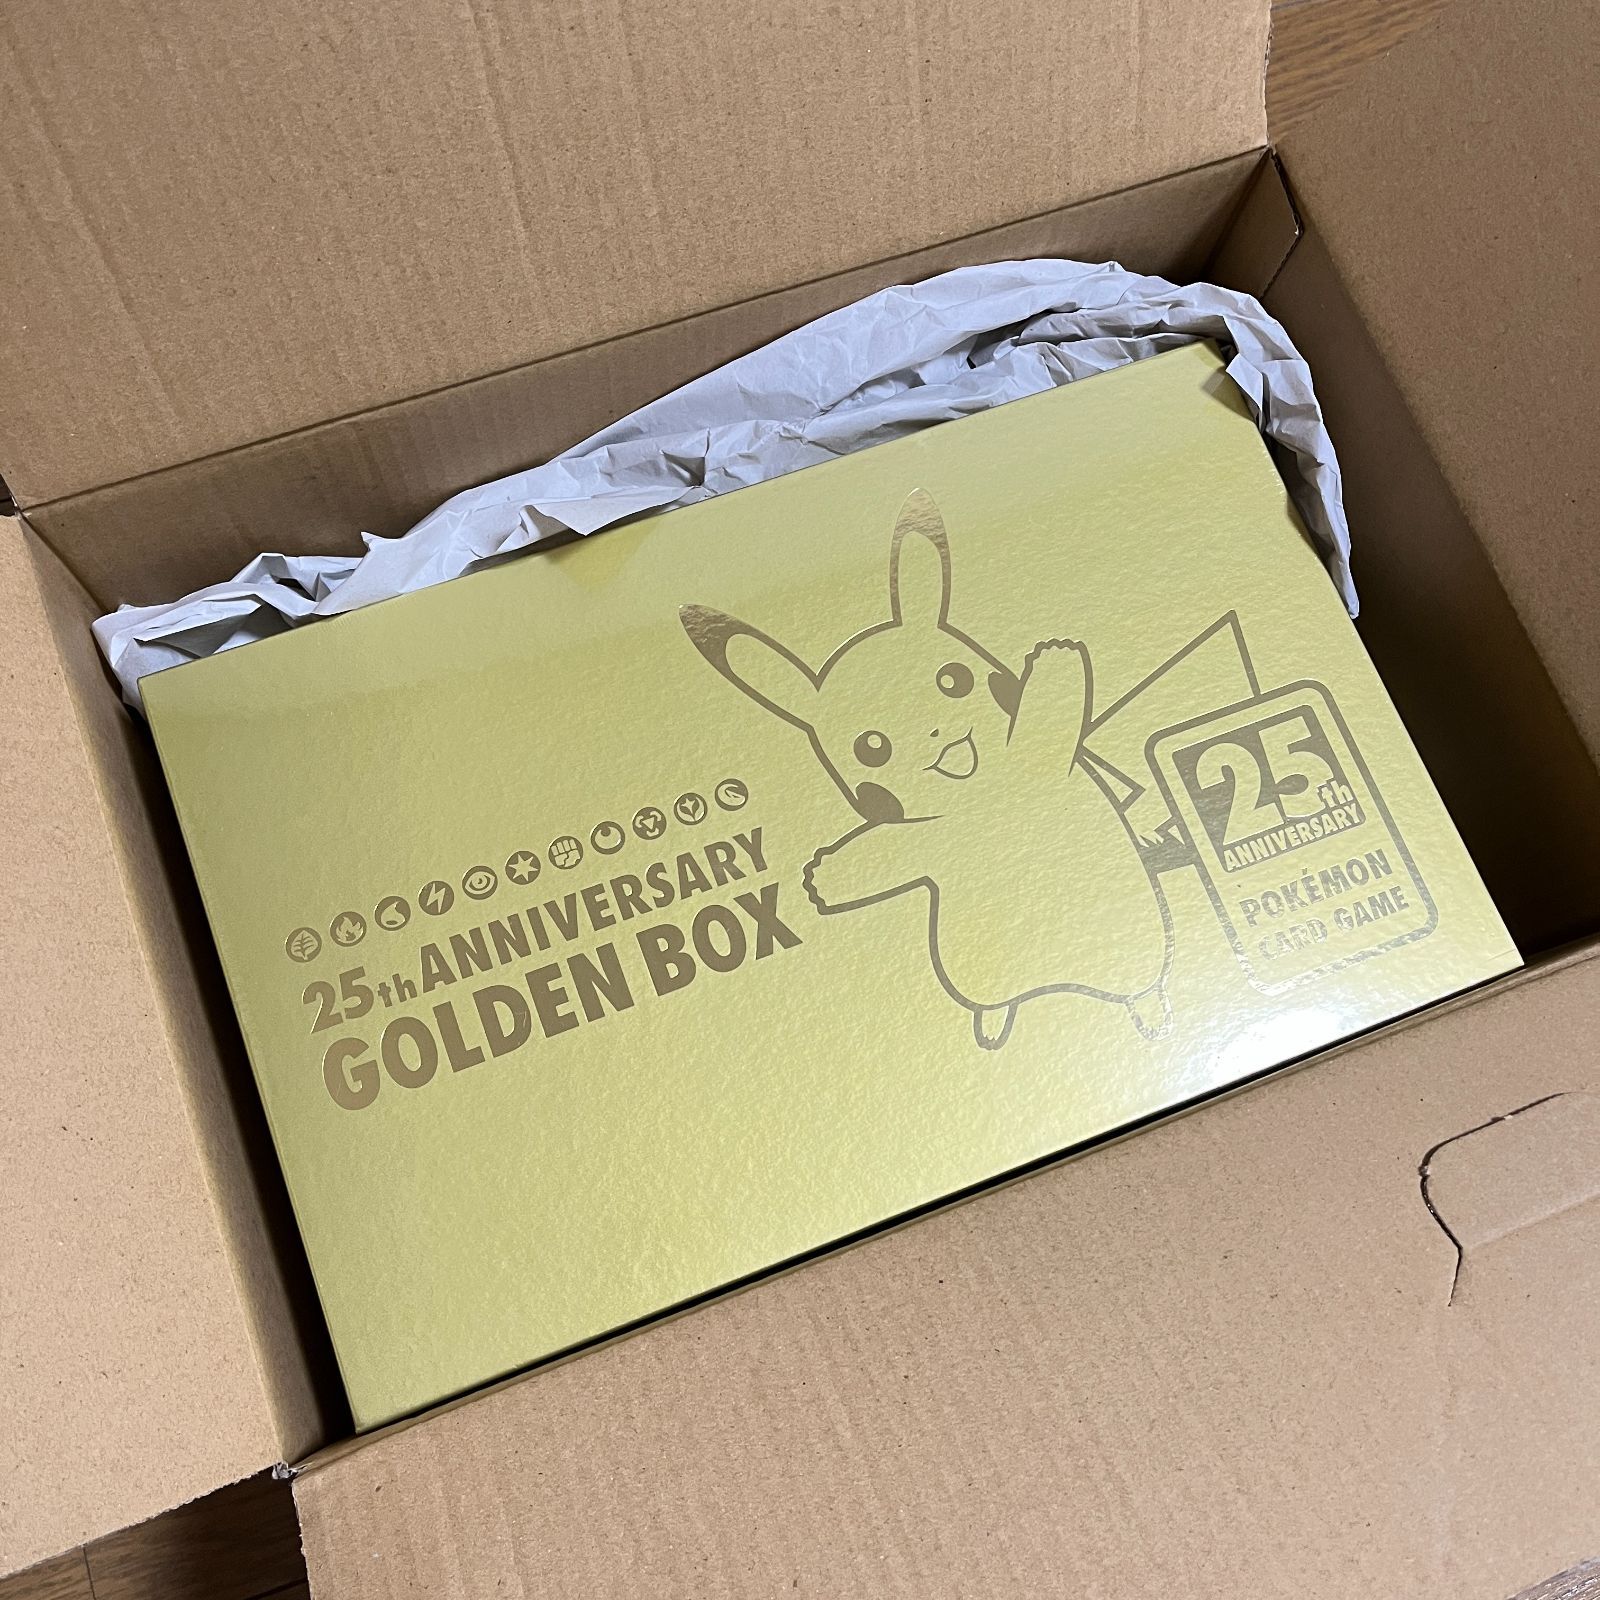 【納品書付】25th ANNIVERSARY GOLDEN BOX 未開封品